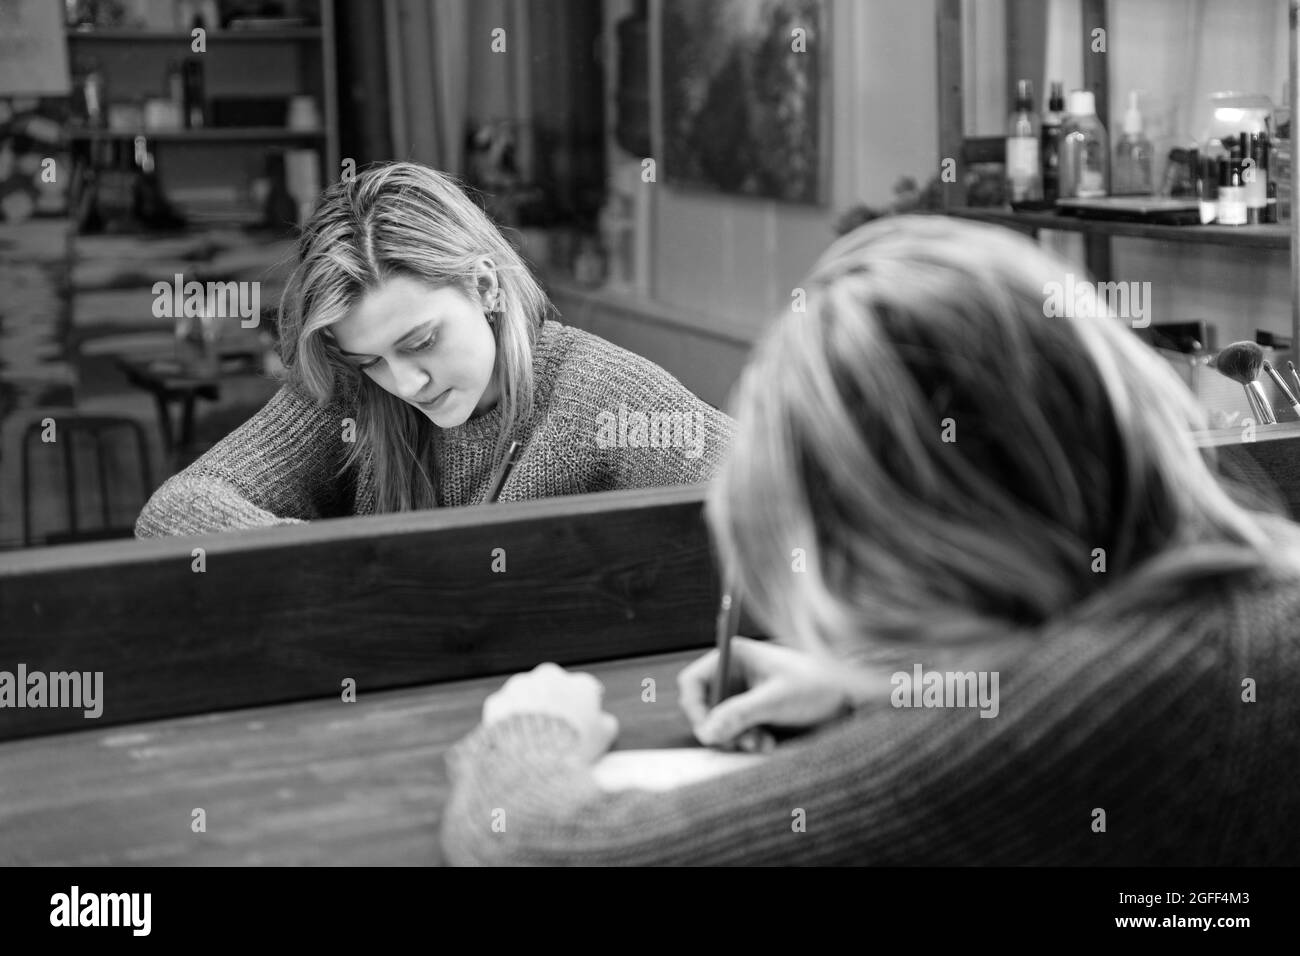 Une jeune femme s'assoit à une table devant un miroir et écrit quelque chose avec un stylo dans un bloc-notes. Mise au point peu profonde. Noir et blanc. Banque D'Images